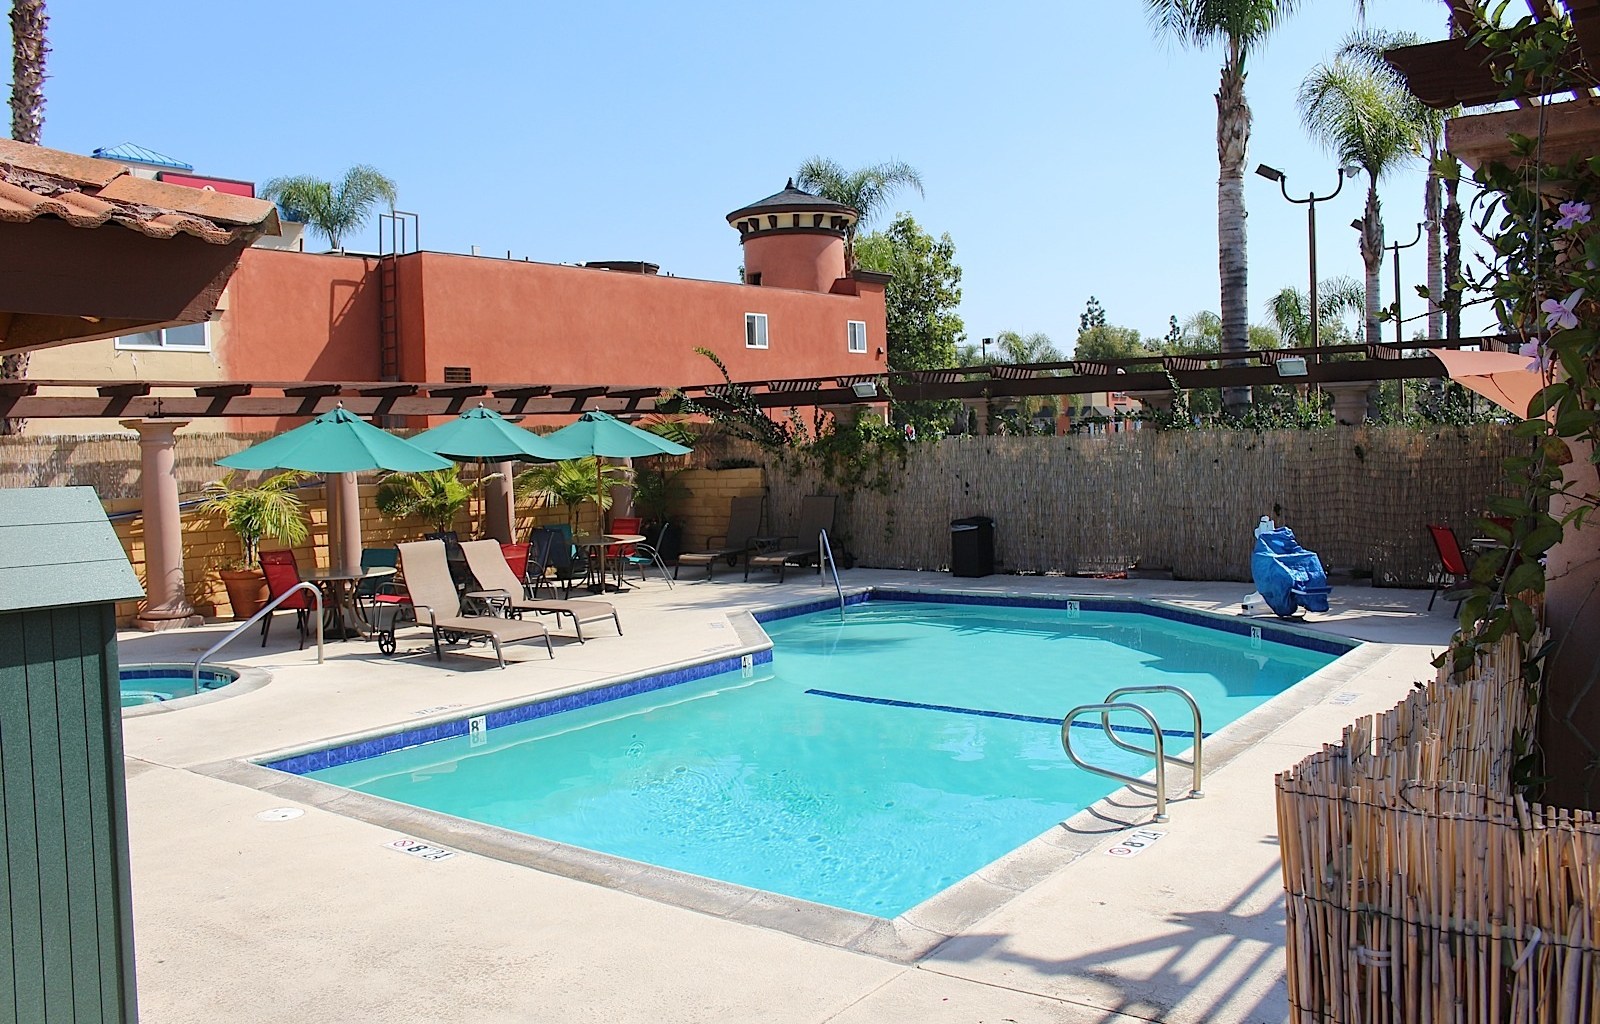 Stanford Inn & Suites - Pool